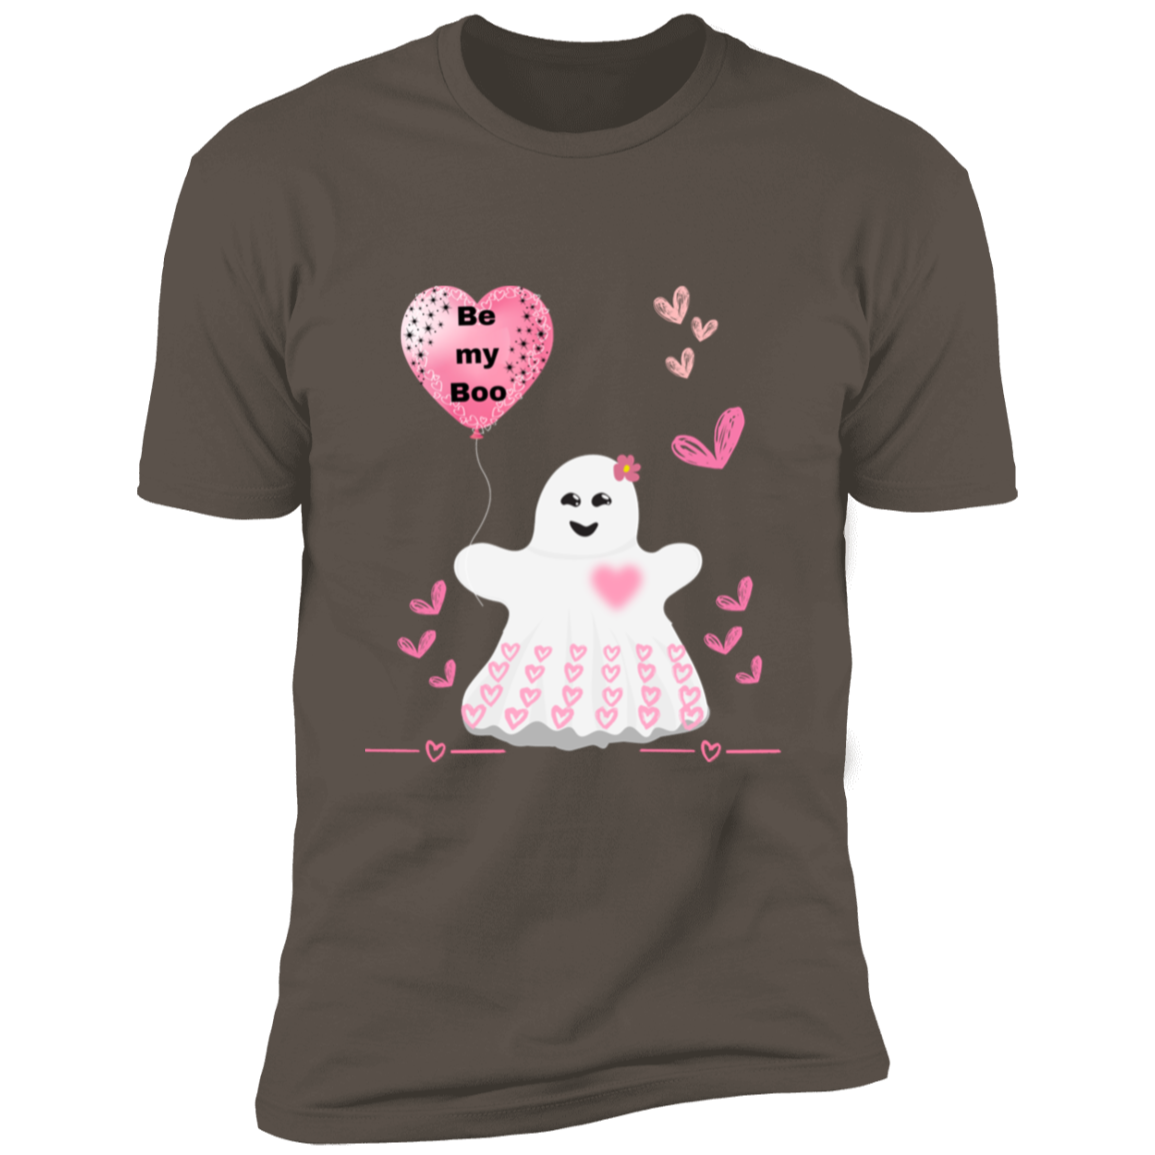 Be my Boo! Premium Short Sleeve T-Shirt